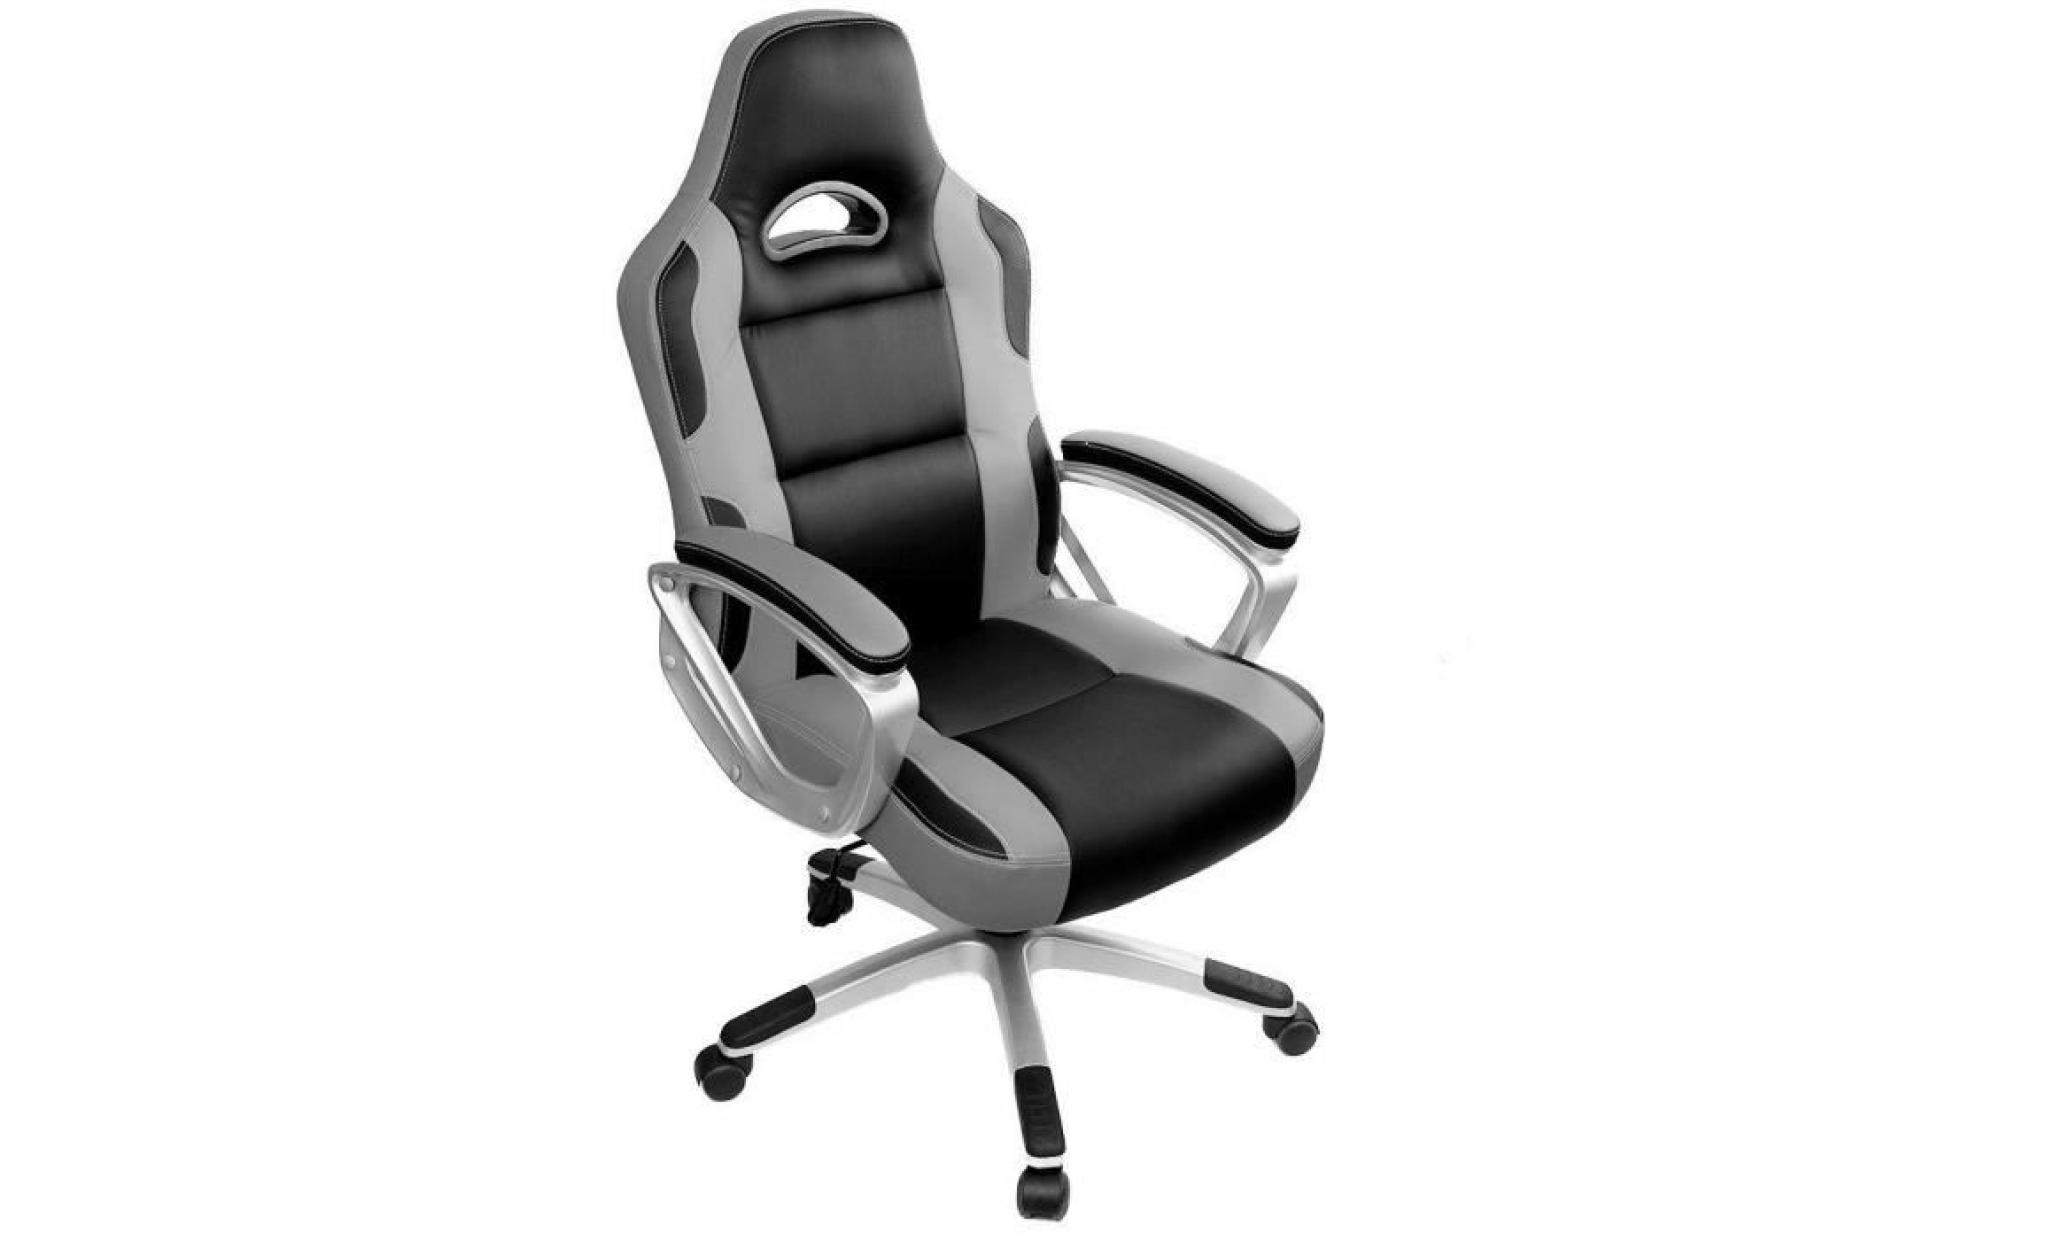 chaise gamer   racing chaise de bureau pu   gaming chaise   fauteuil de  bureau   hauteur réglable   gris / noir   intimate wm heat